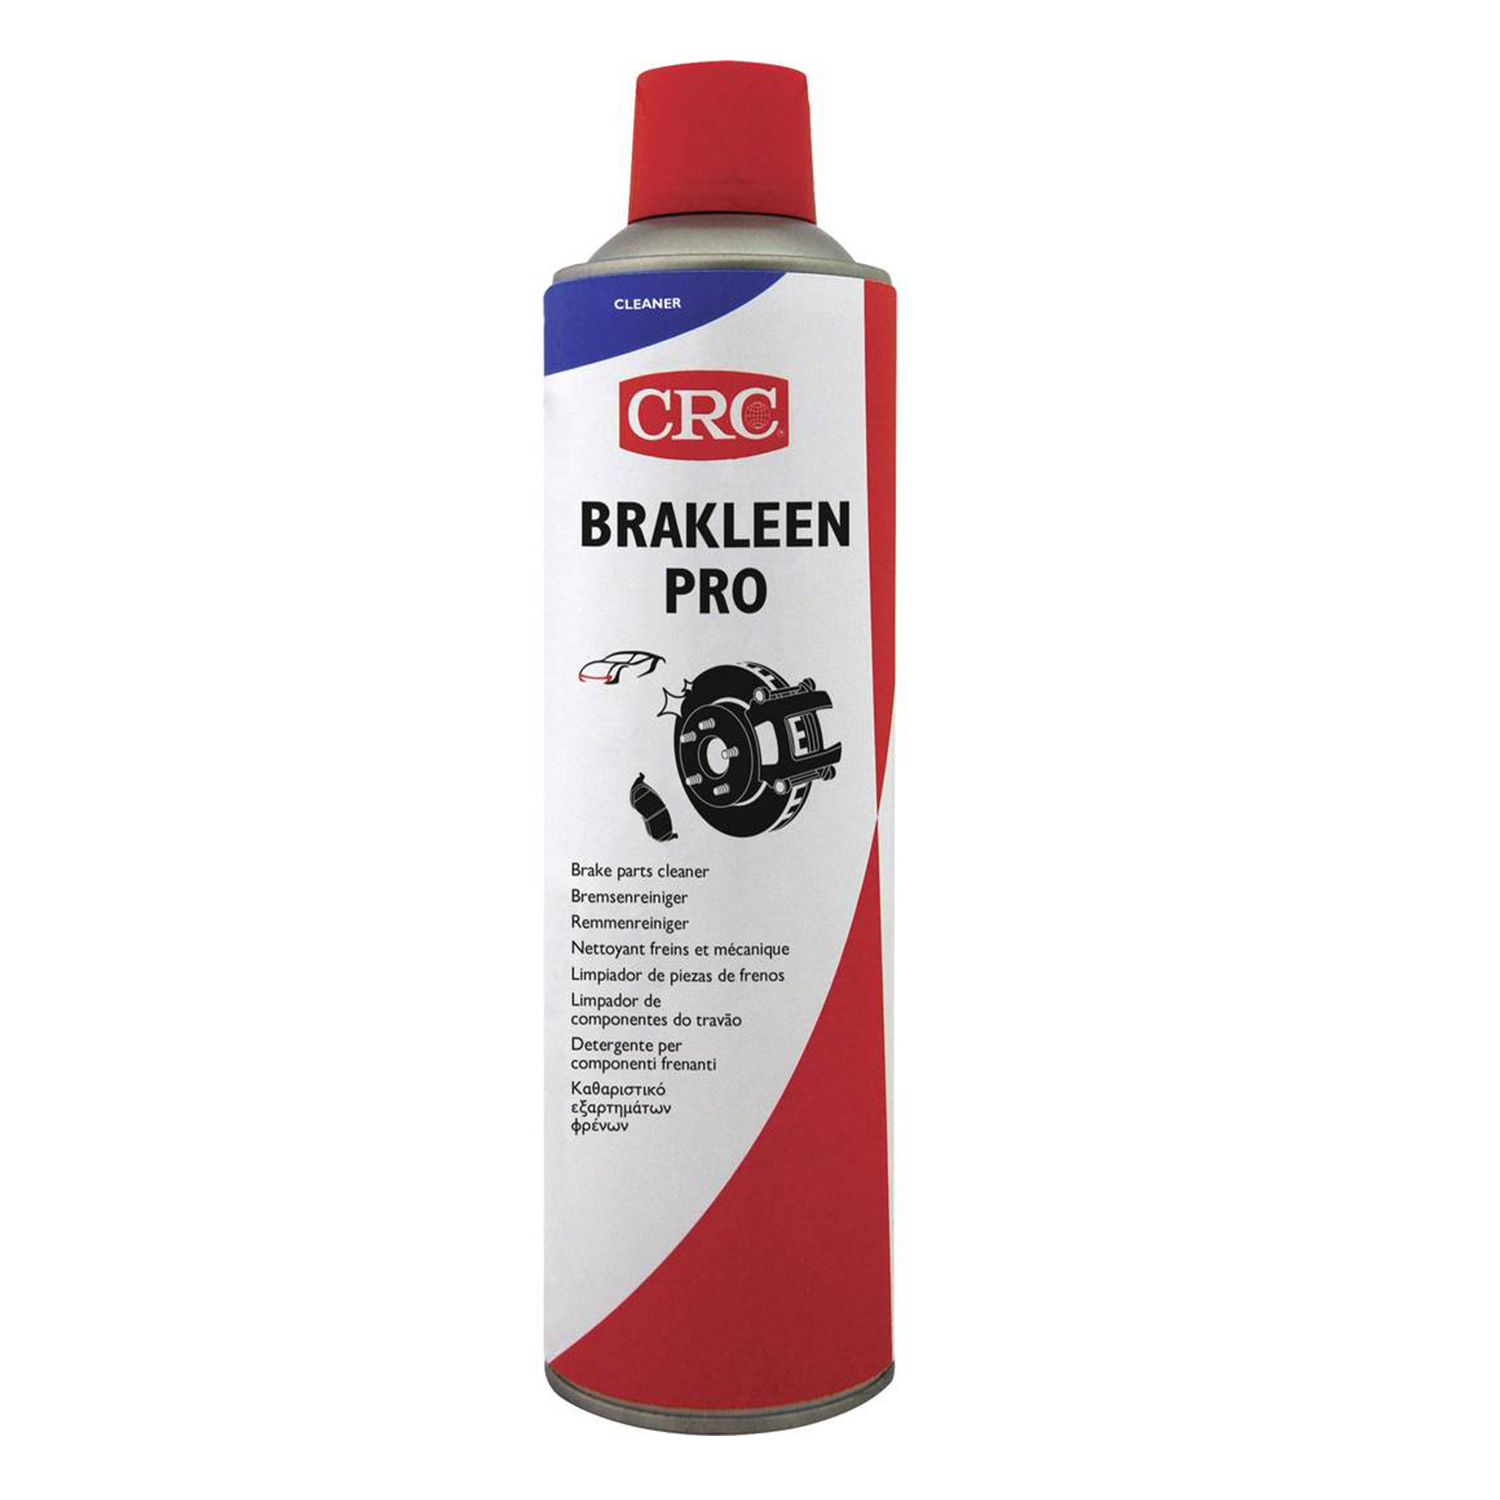 CRC BRAKLEEN PRO Bremsenreiniger, 500 ml - Spraydose